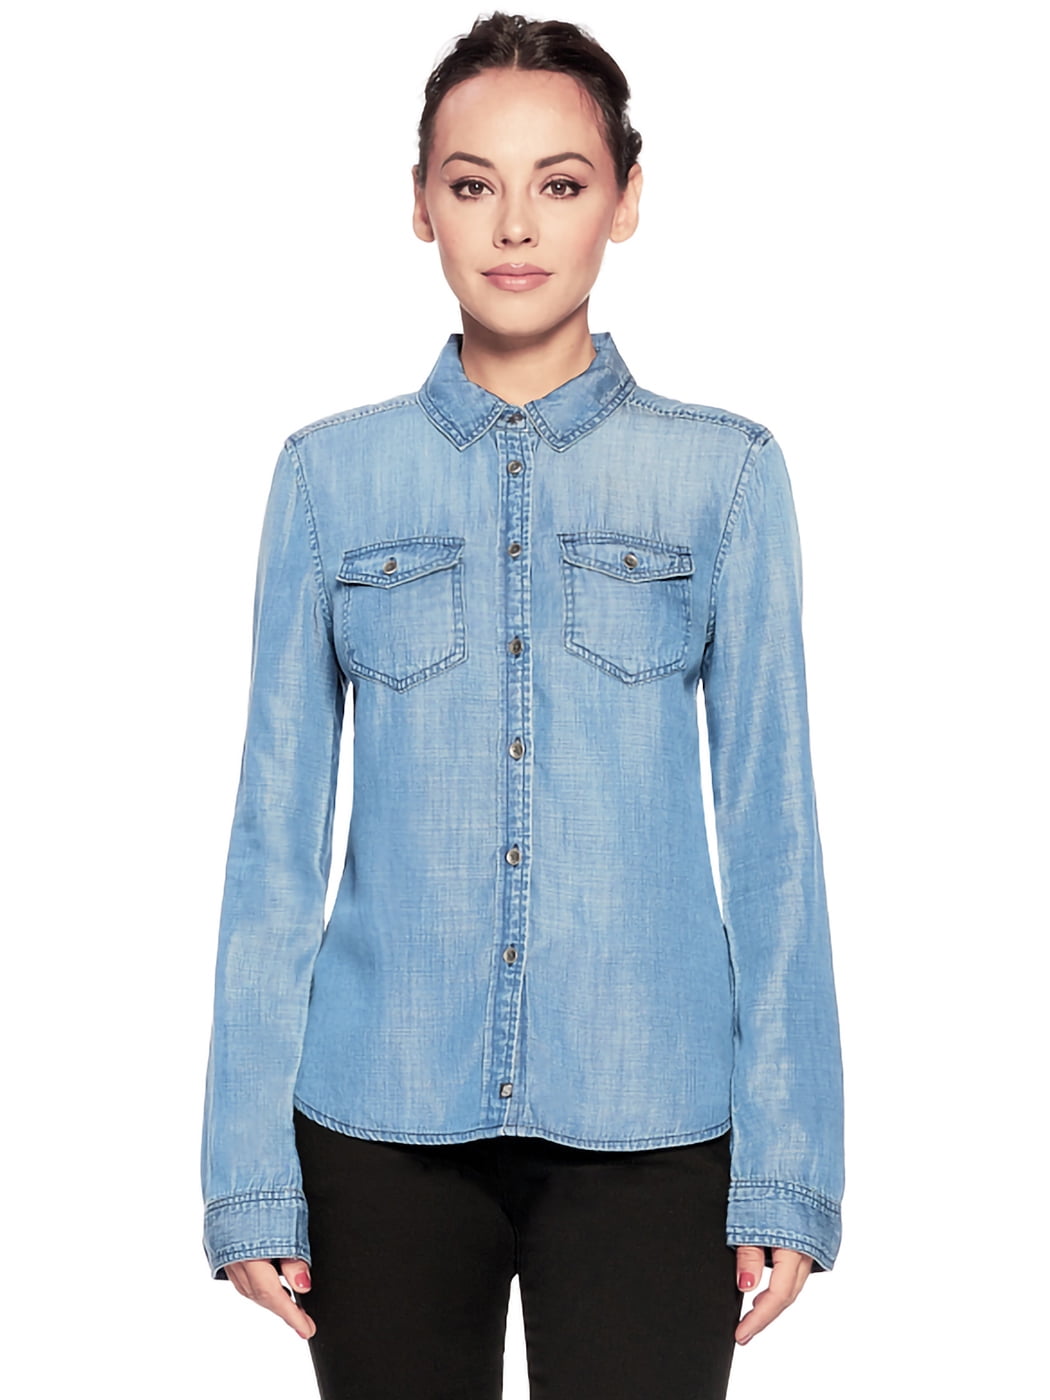 Women's Denim Blouse Button Down Blue Jean Tencel Long Sleeve Western ...